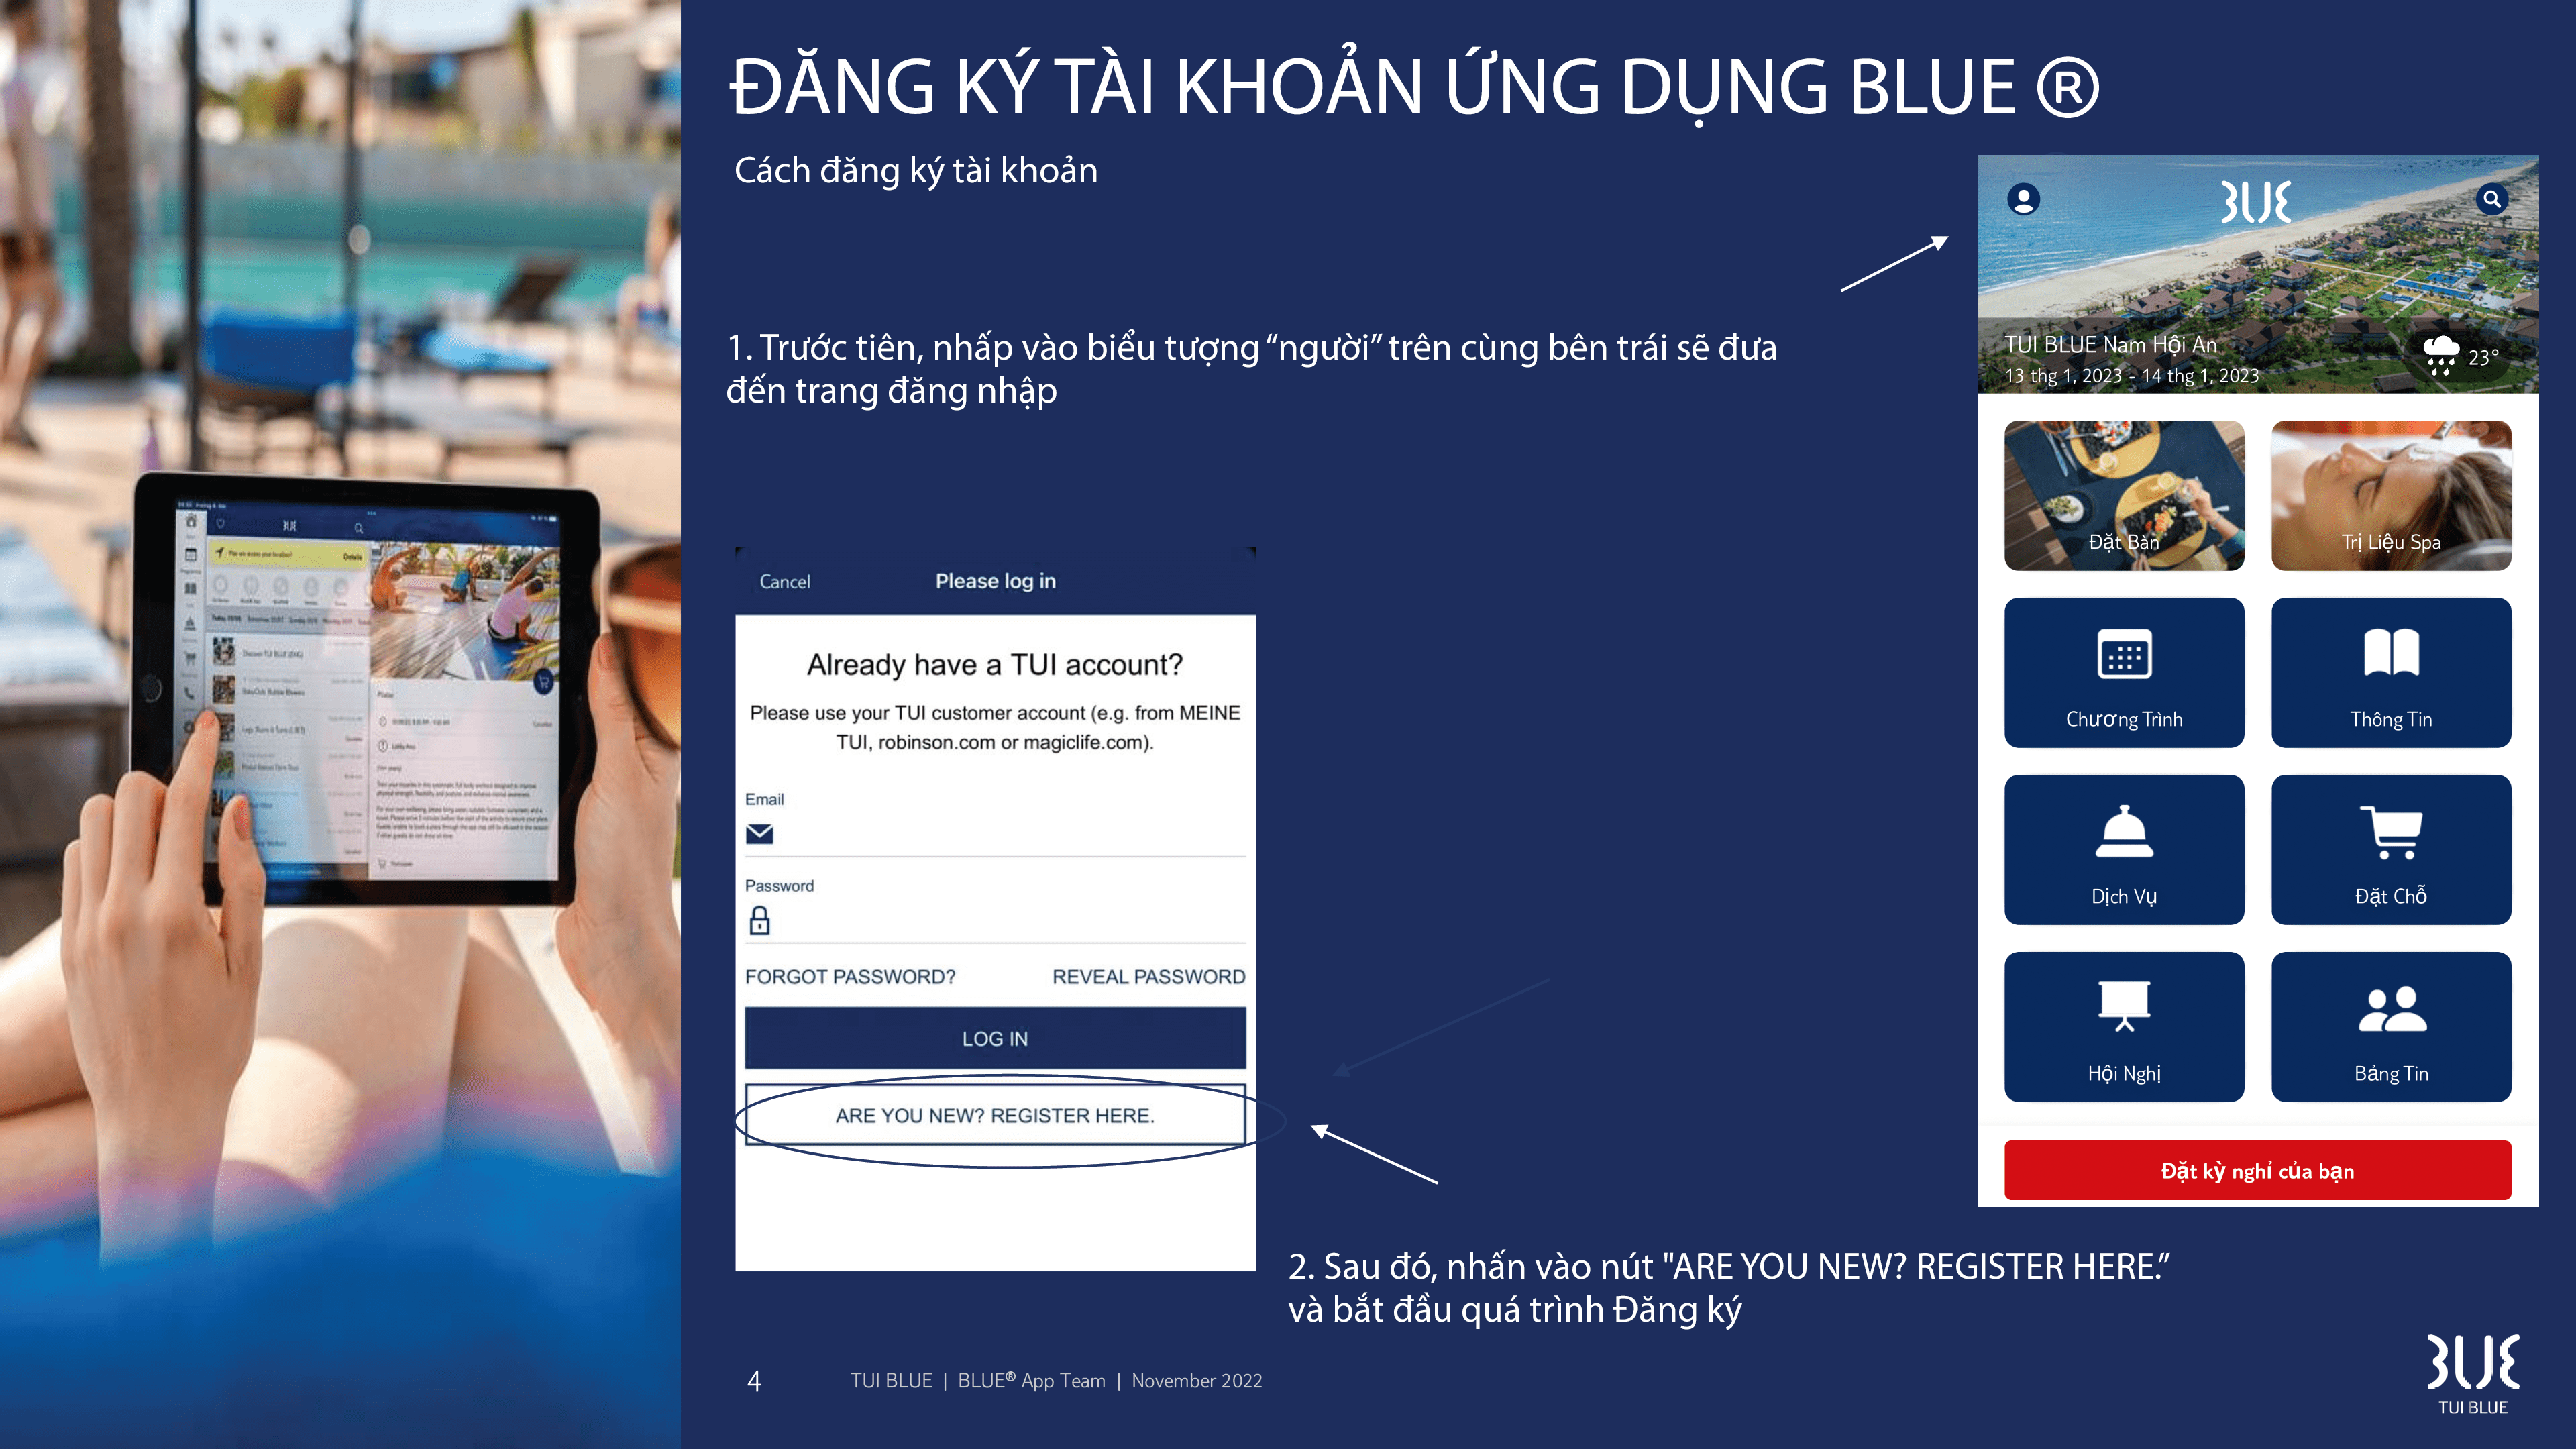 TUI BLUE Nam Hoi An 1 V